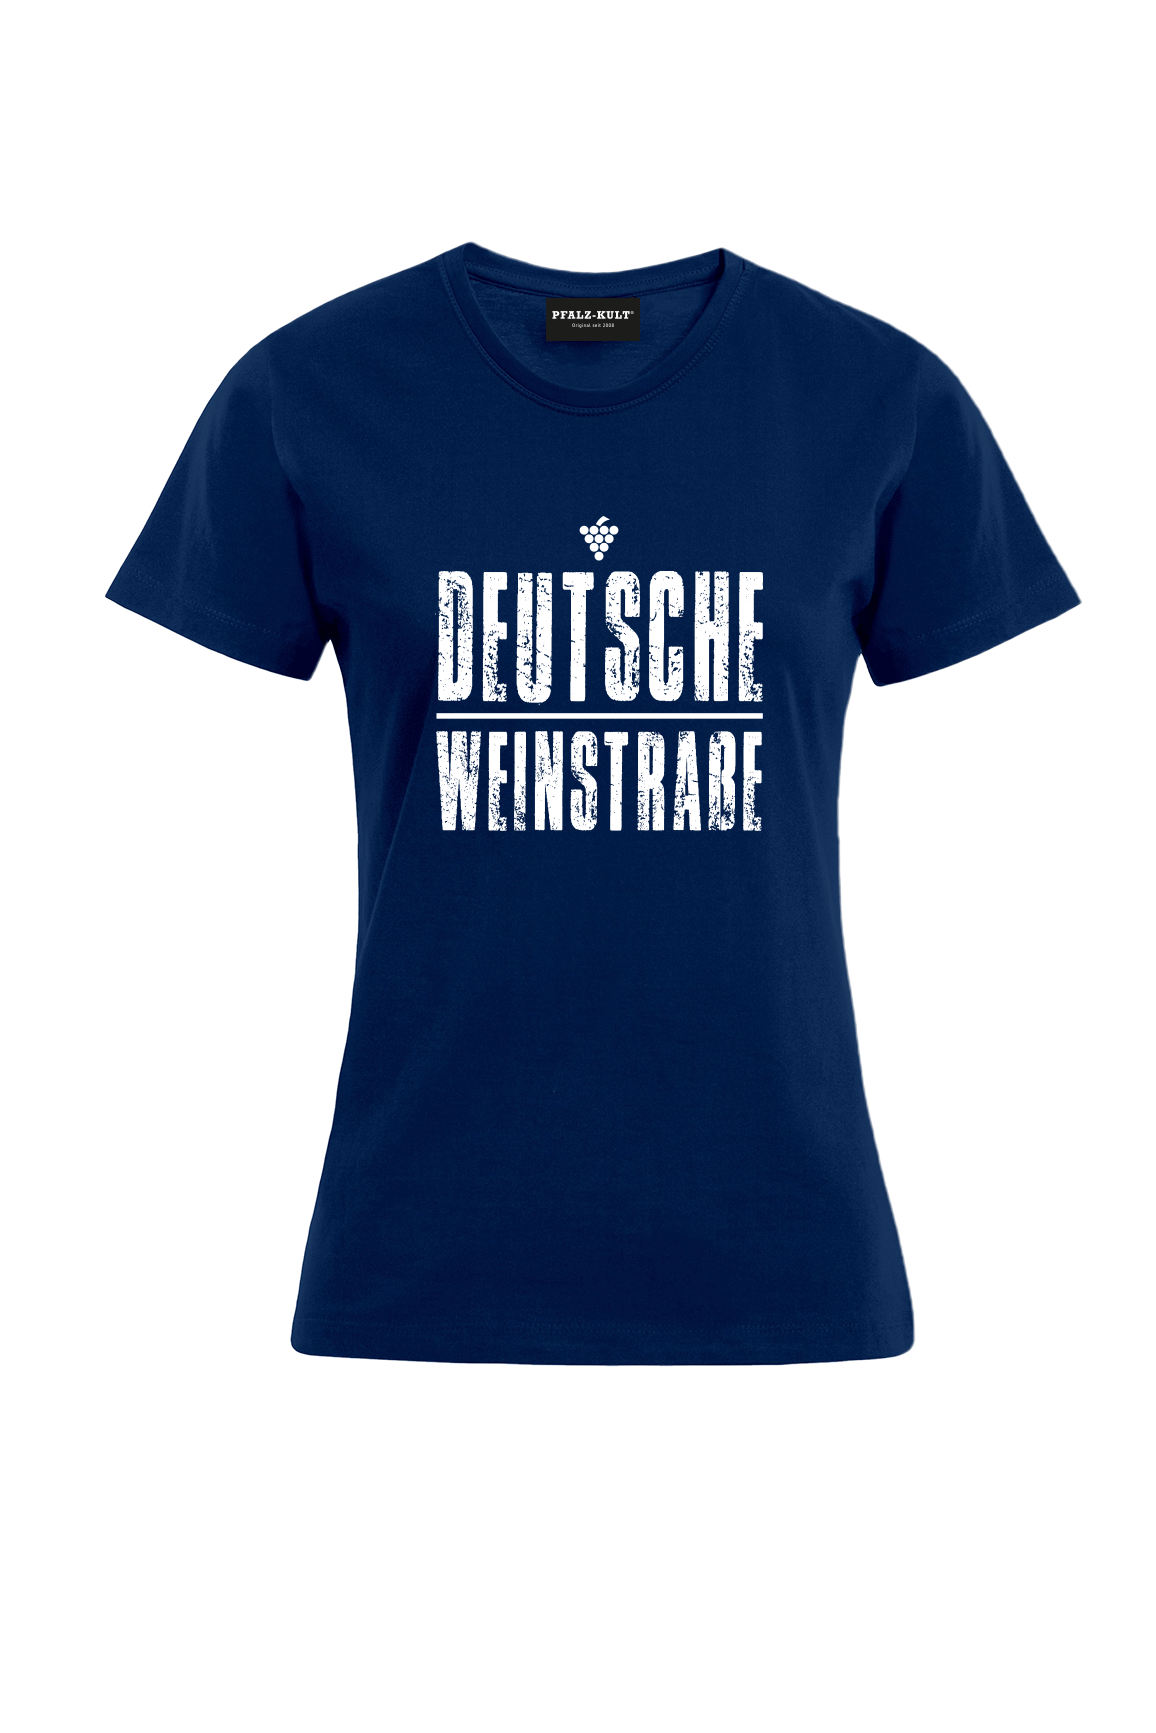 Dunkelblaues T-Shirt mit dem Aufdruck "Deutsche Weinstrasse" .  Das ideale Geschenk für jedes Pfalzkind vom Textildruck Spezialisten aus Bad Dürkheim.